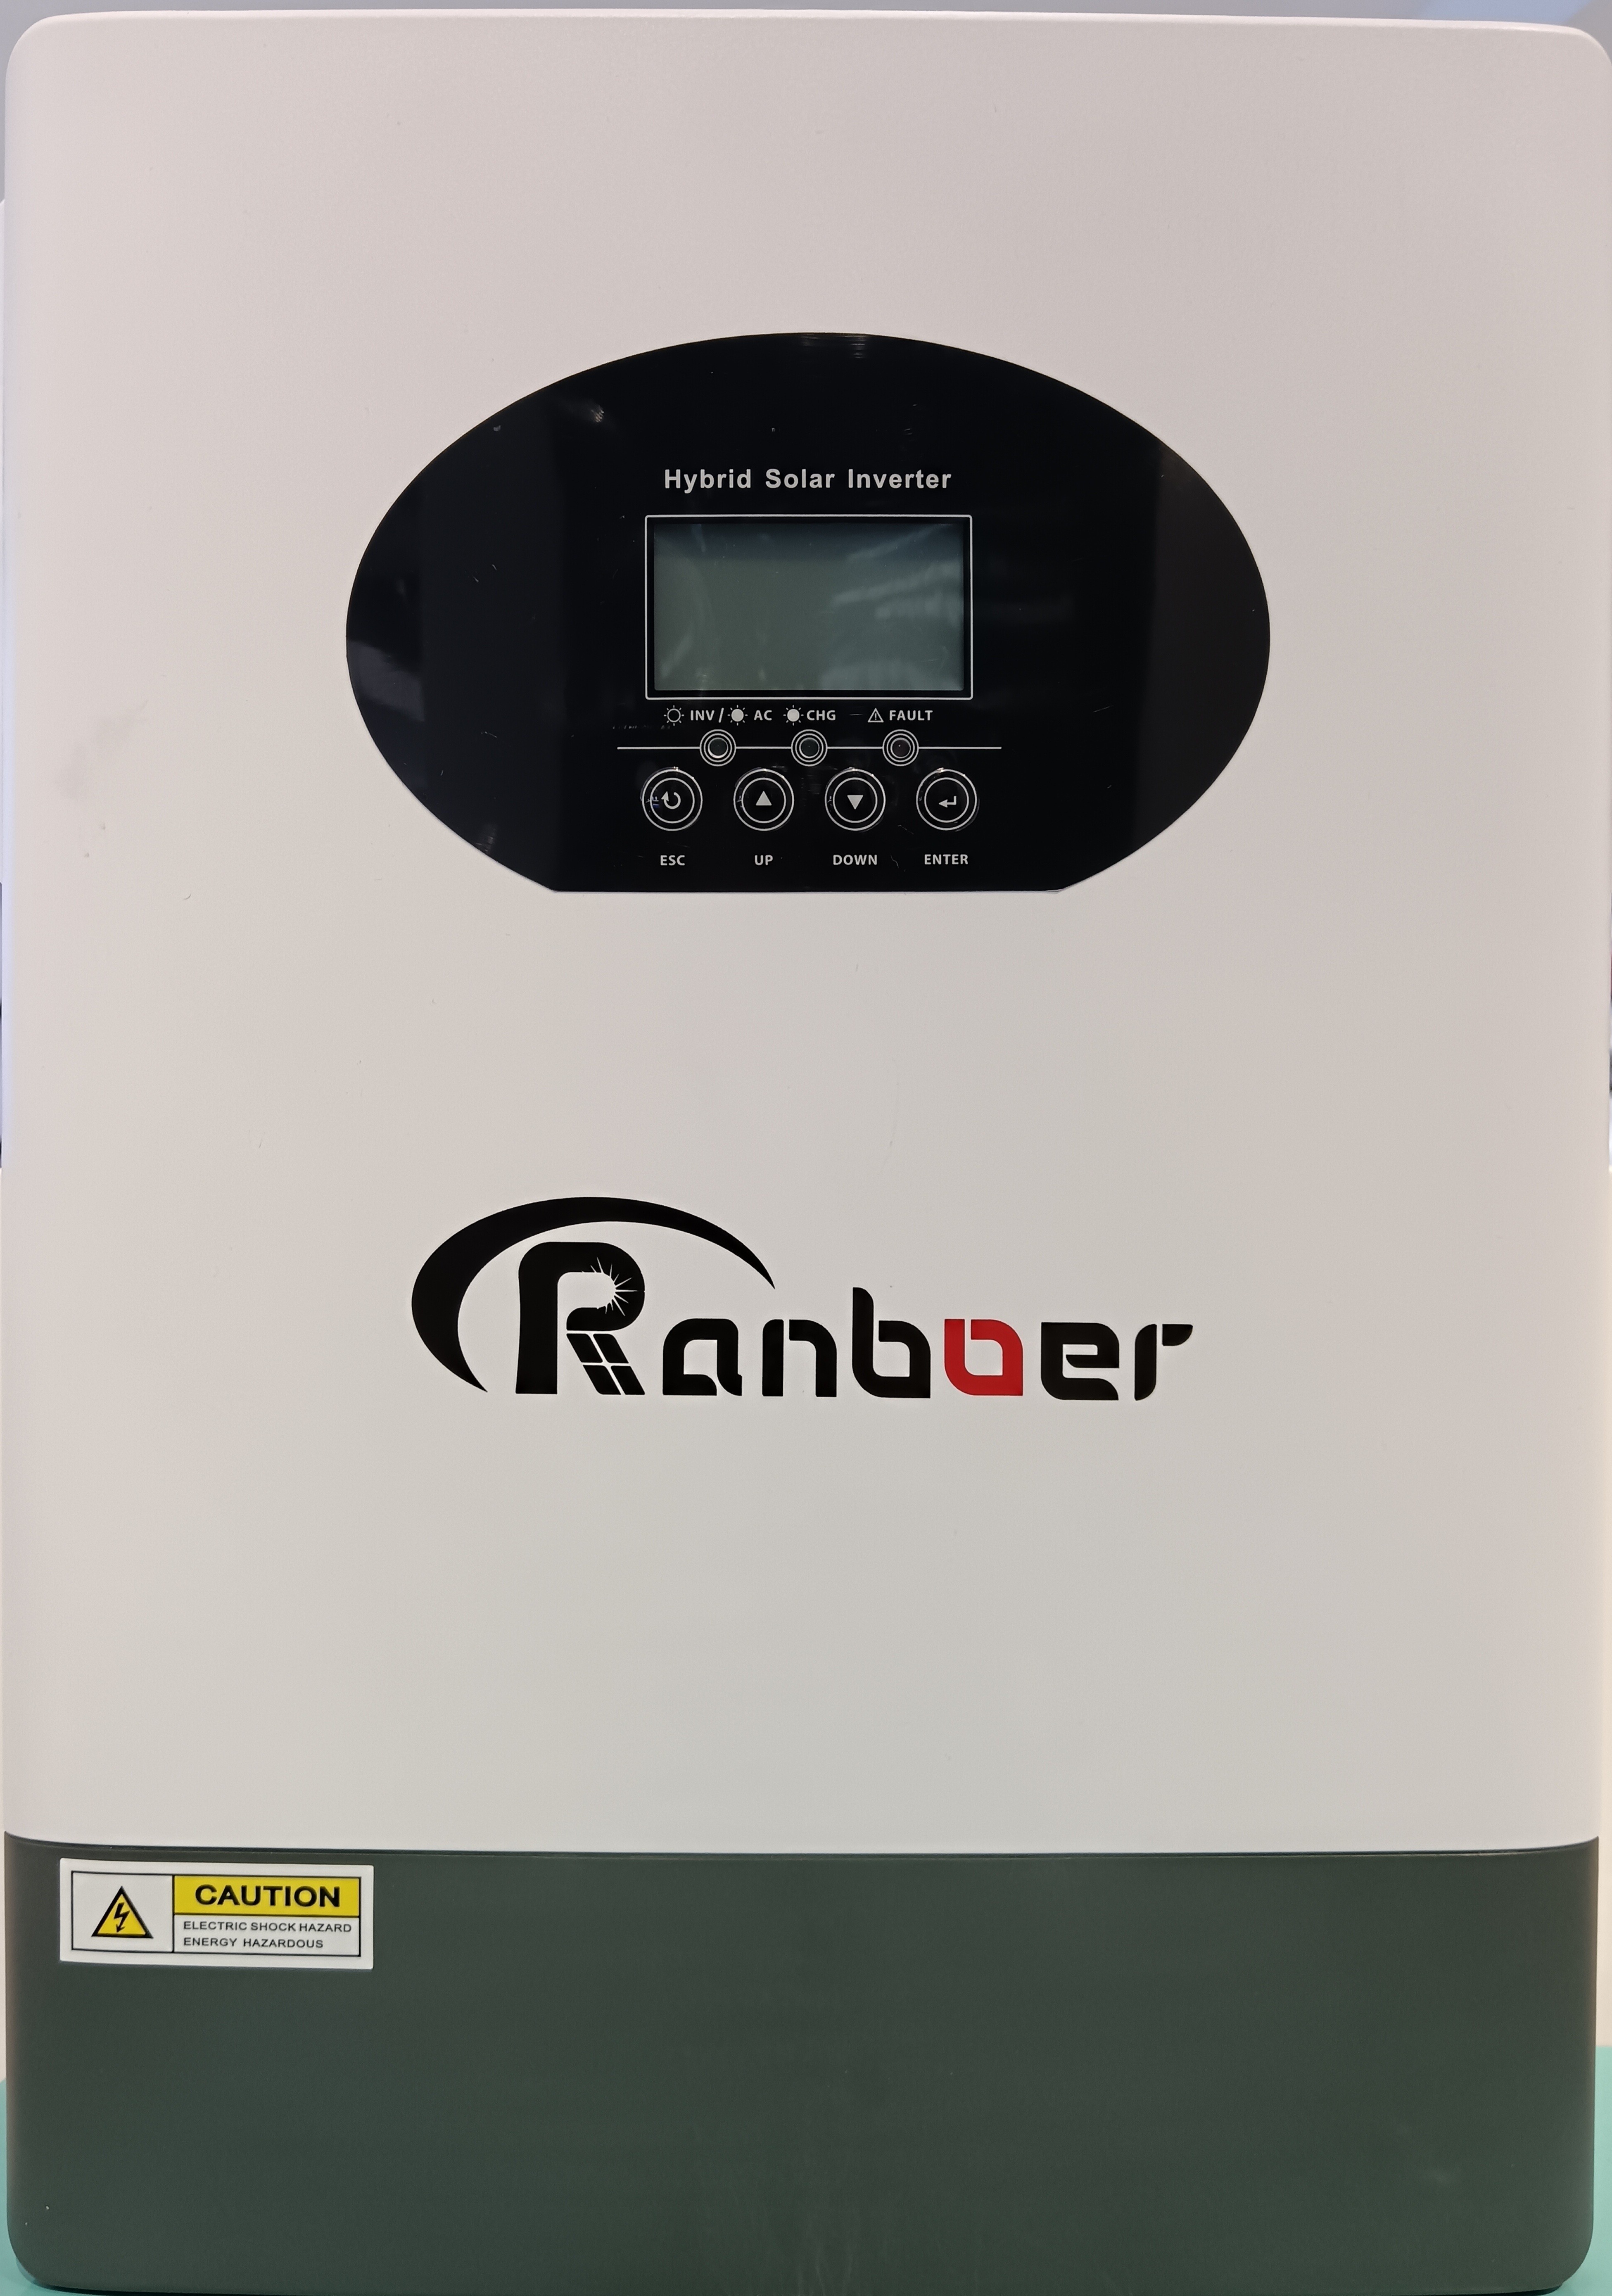 Ranboer润博离网逆变器5.5KW光伏转换器控制器一体机图